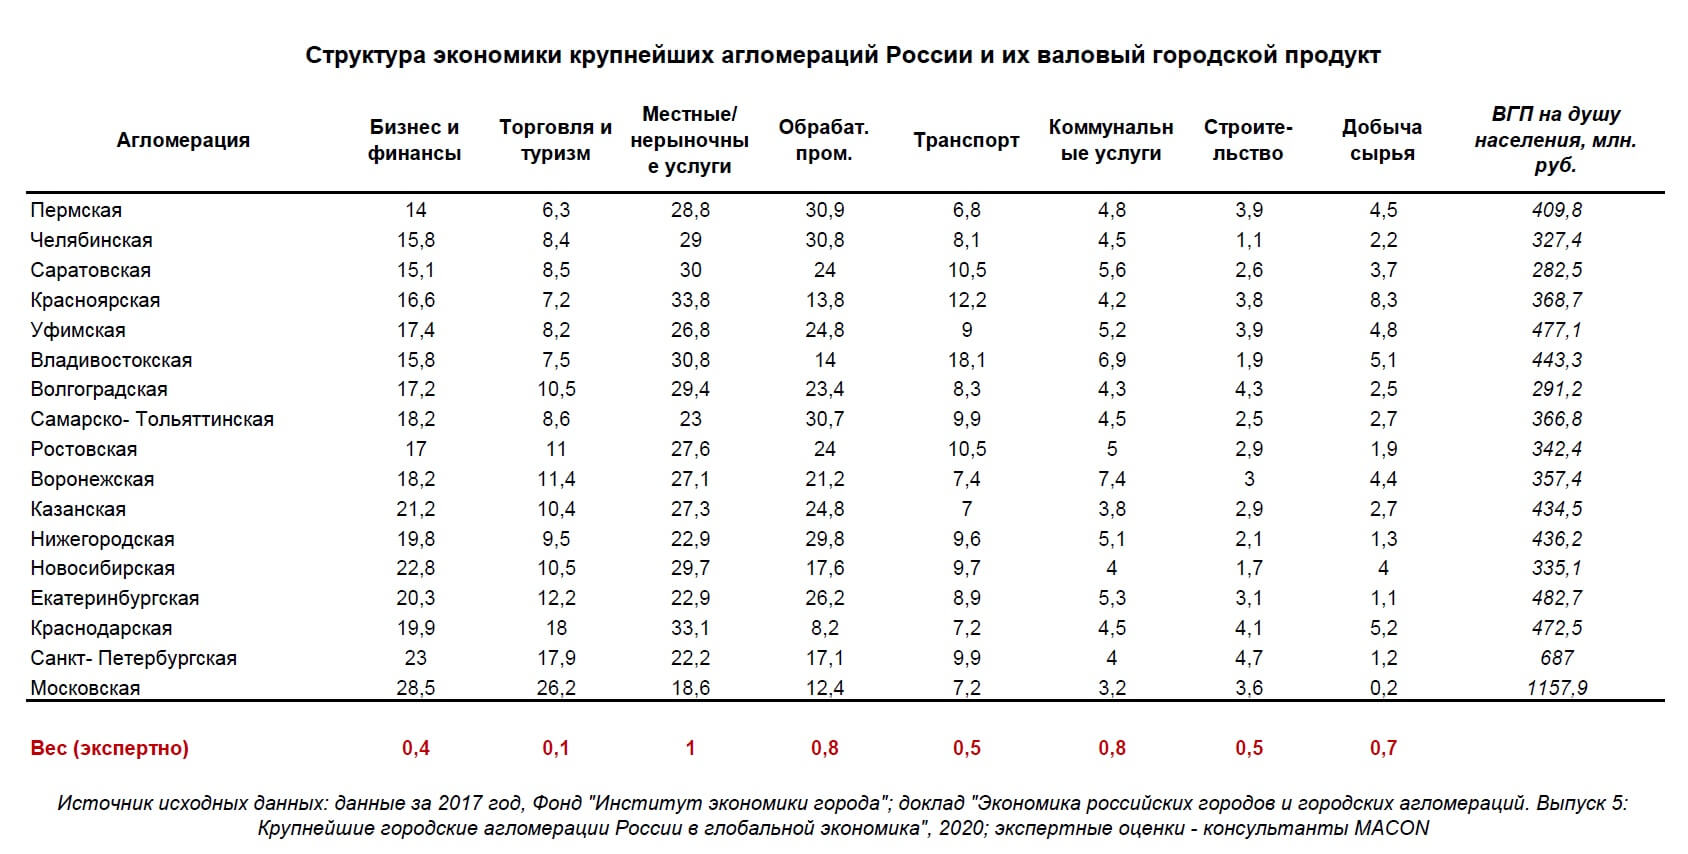 Rusijos aglomeracijų ekonomikos struktūra ir BVP